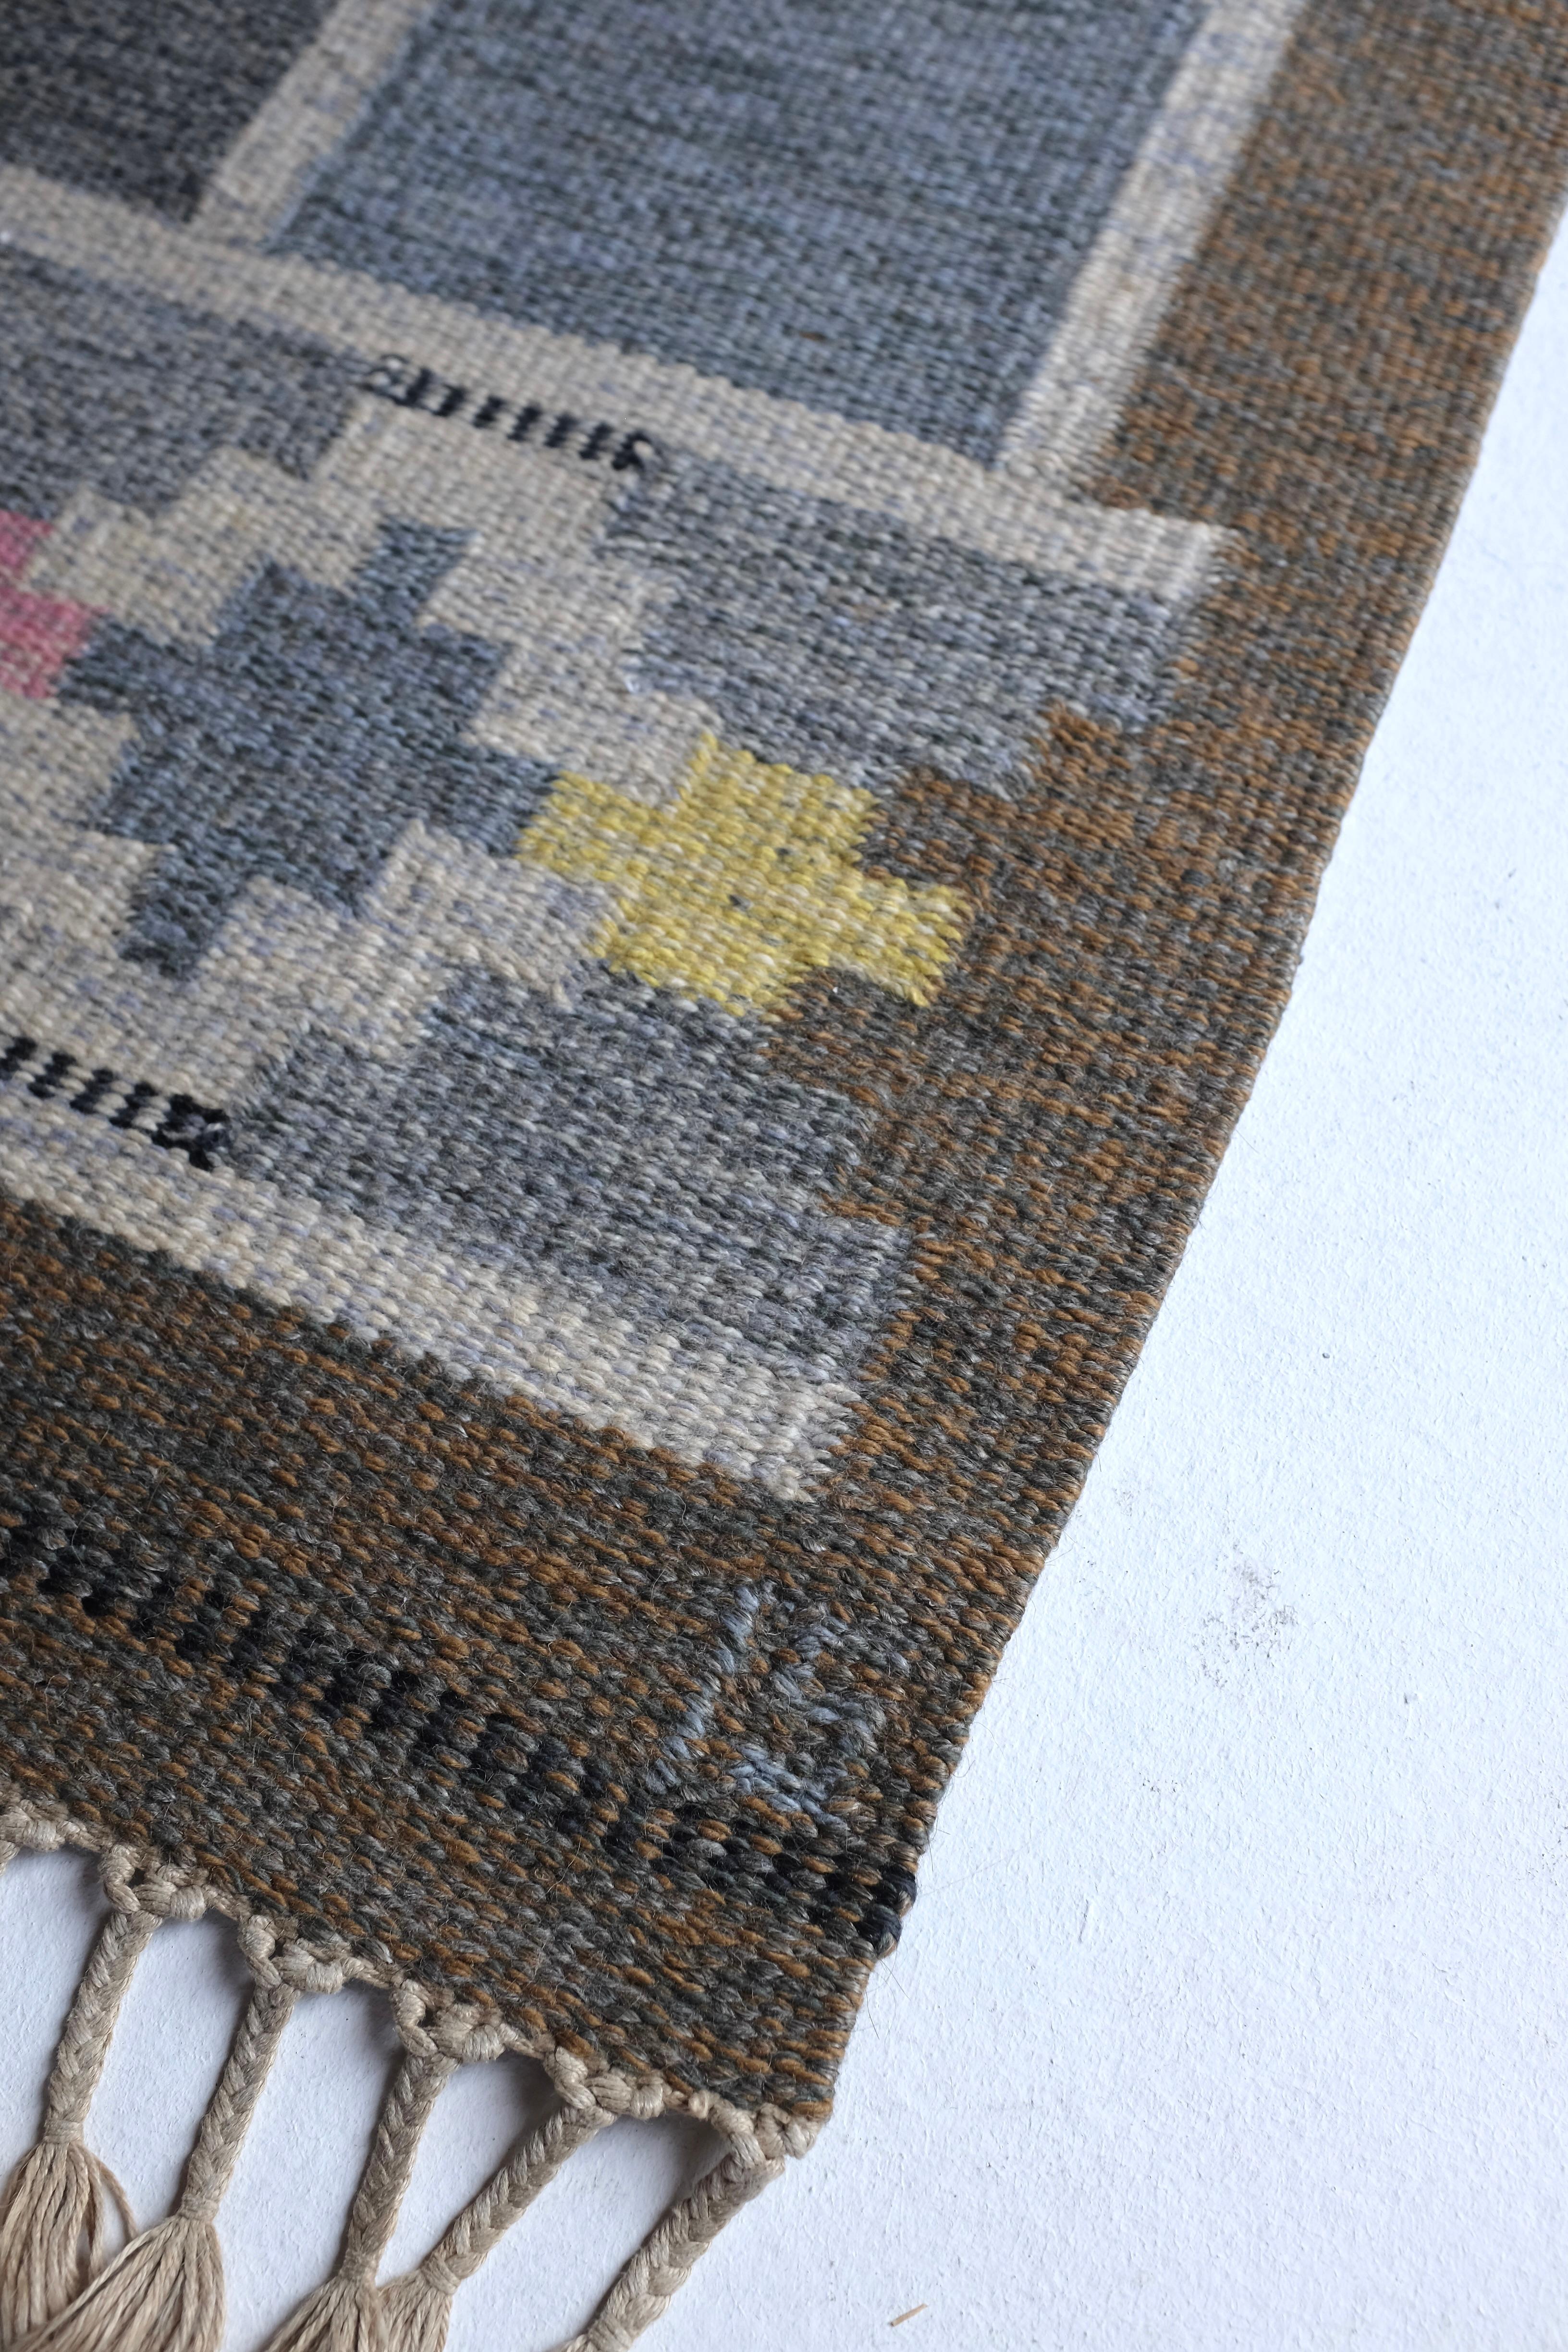 Mid-20th Century Vintage Swedish Kilim rug 